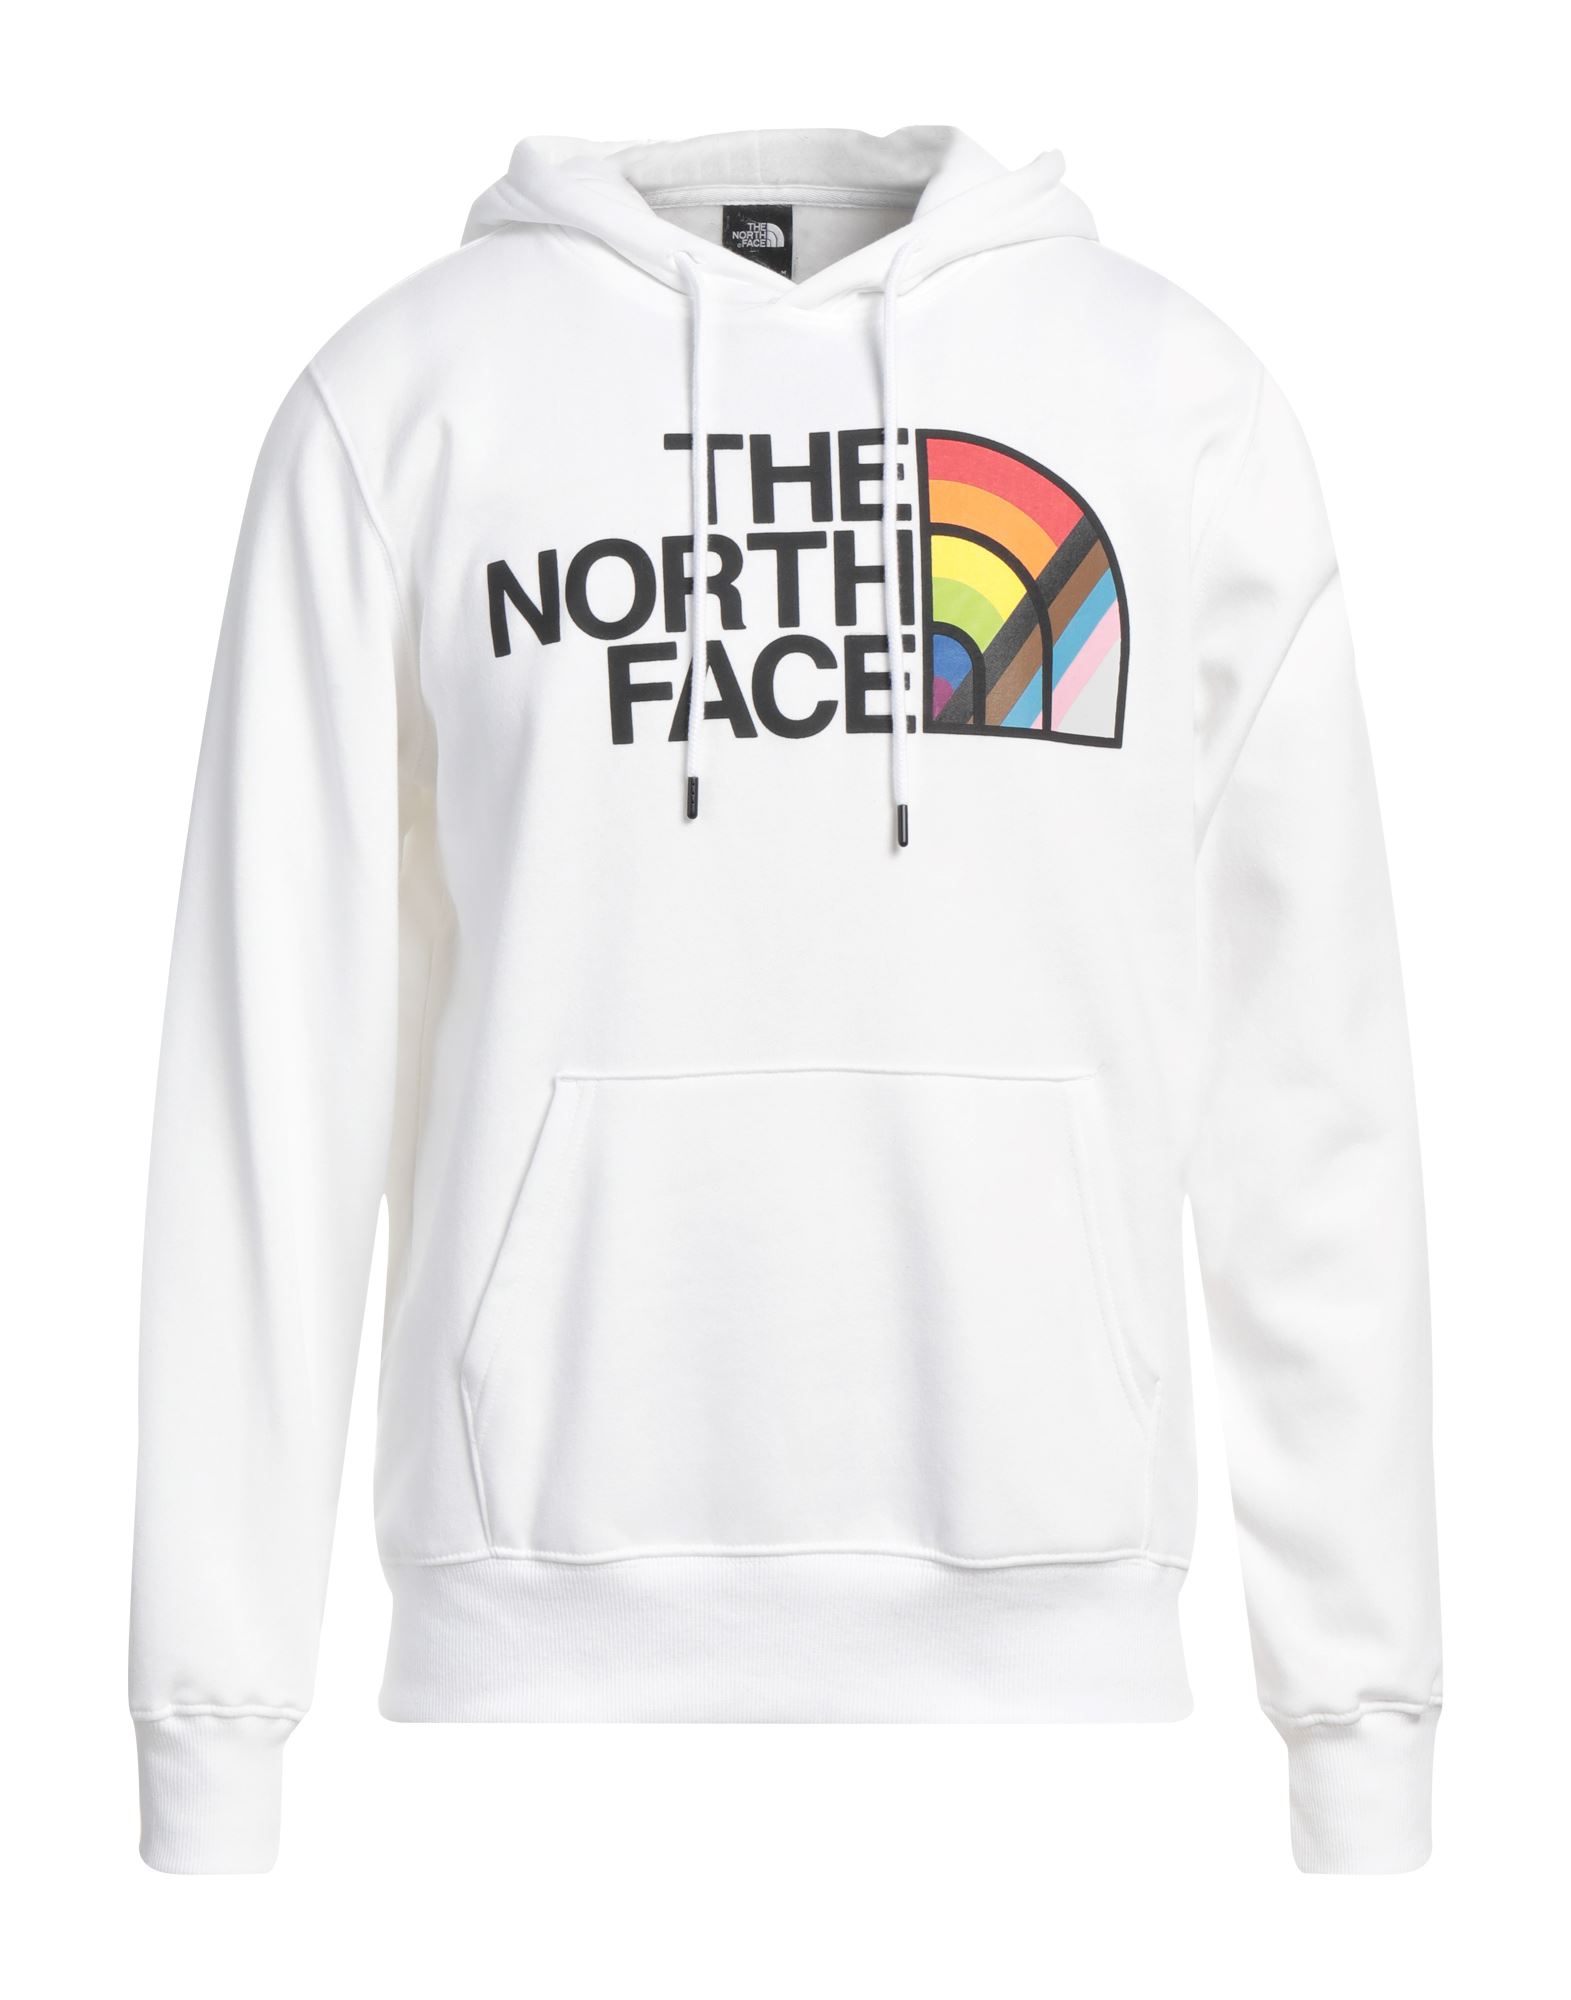 THE NORTH FACE Sweatshirt Herren Weiß von THE NORTH FACE